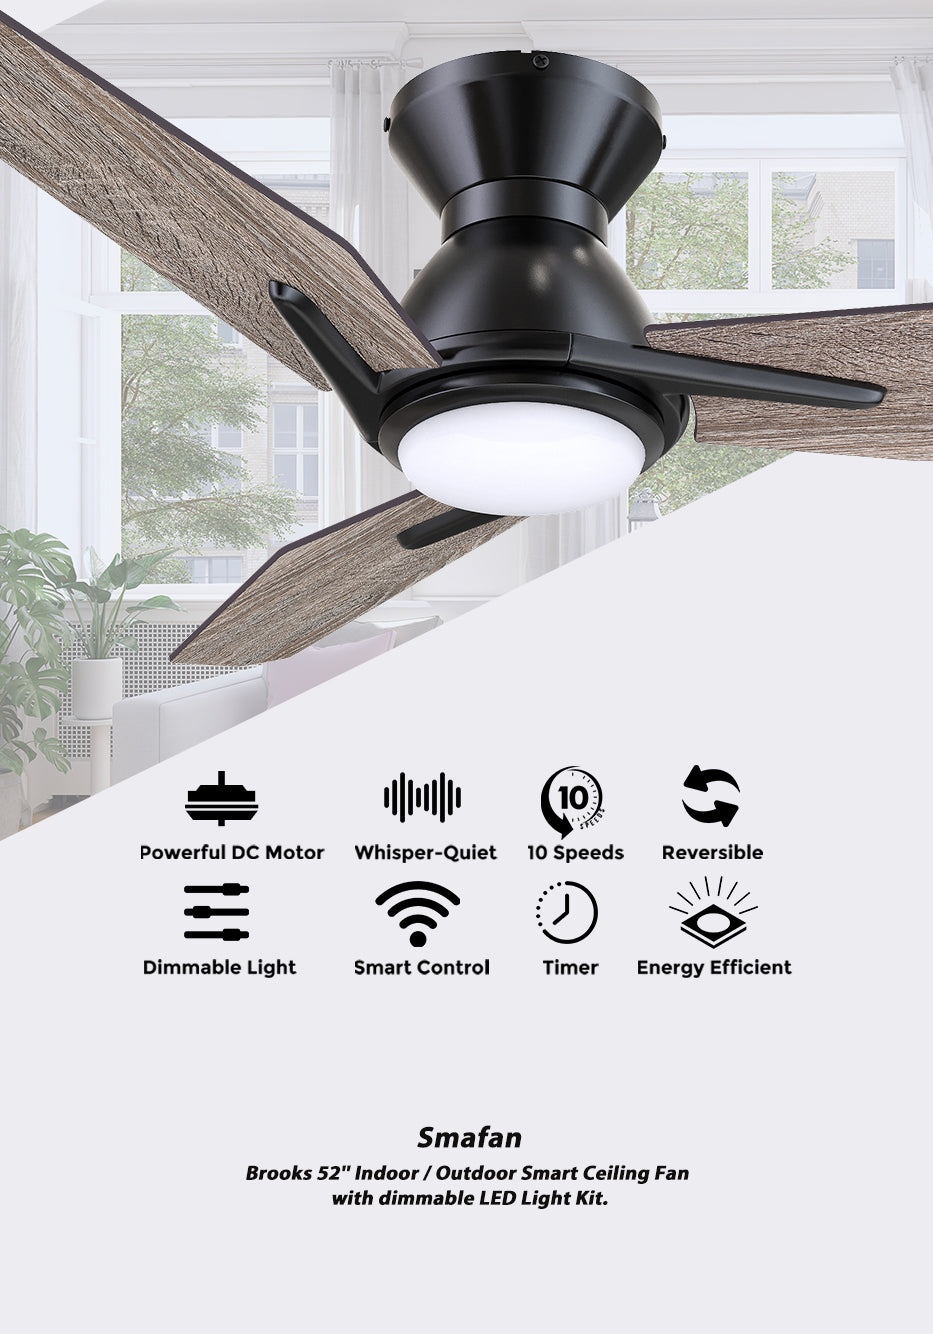 Carro-Smafan-52”-Brooks-Flush-Mount-Smart-Ceiling-fan-Works-with-Amazon-Alexa